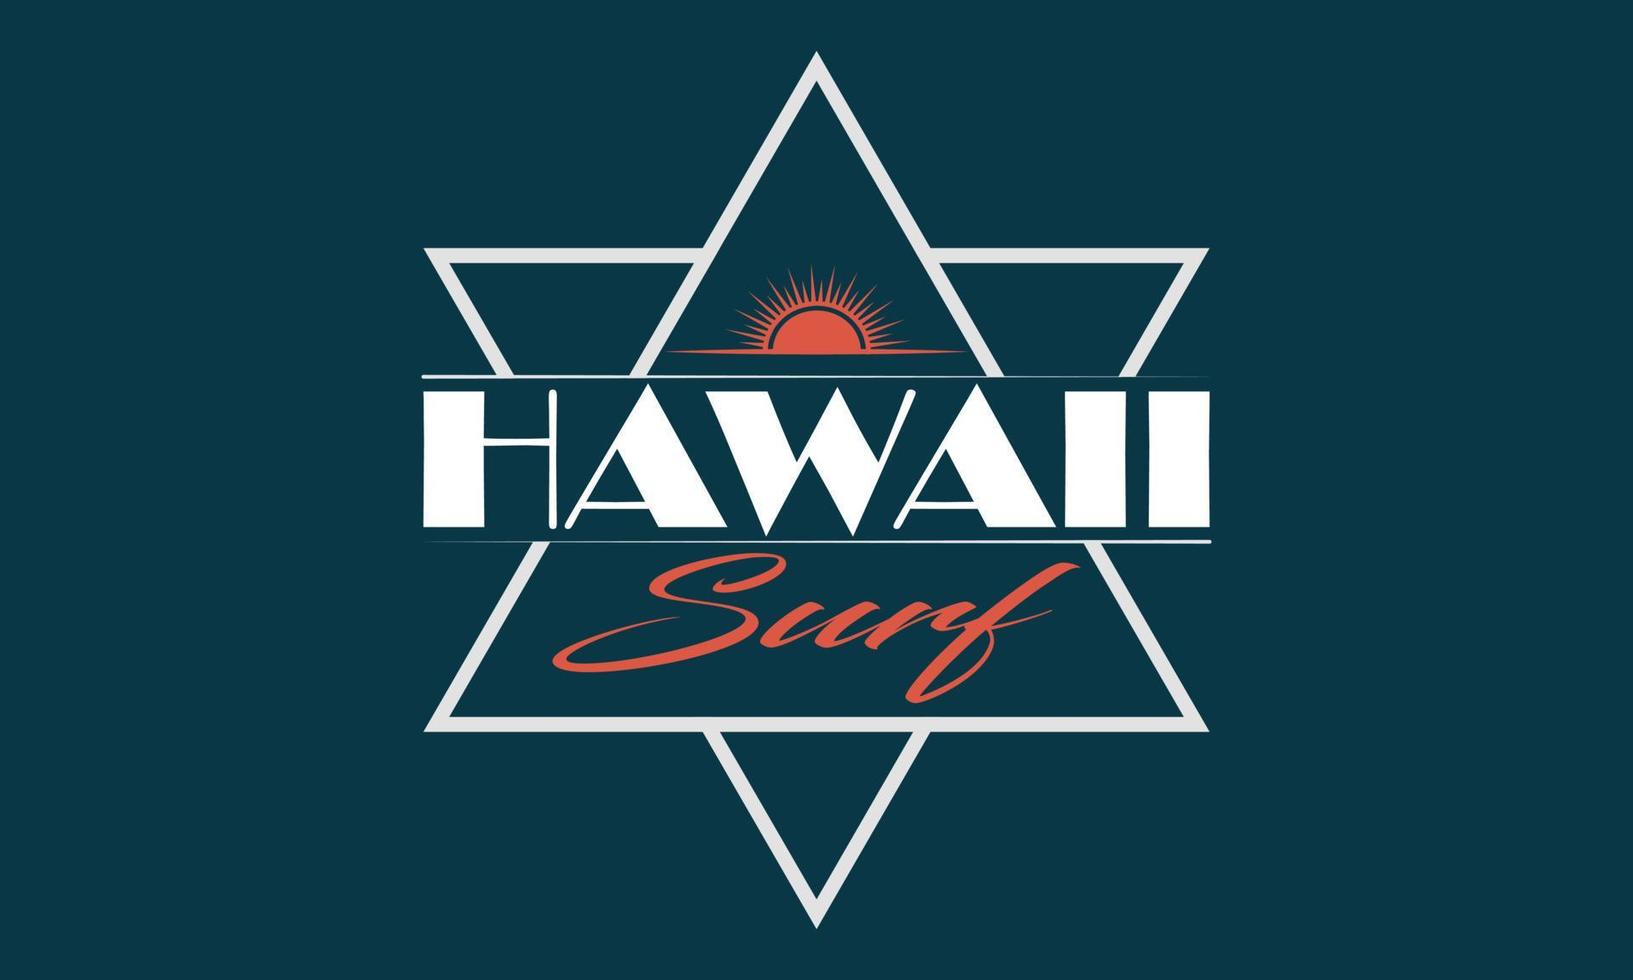 Hawaii Surf tipografia maglietta design. fare surf motivazionale tipografia maglietta creativo bambini, vettore